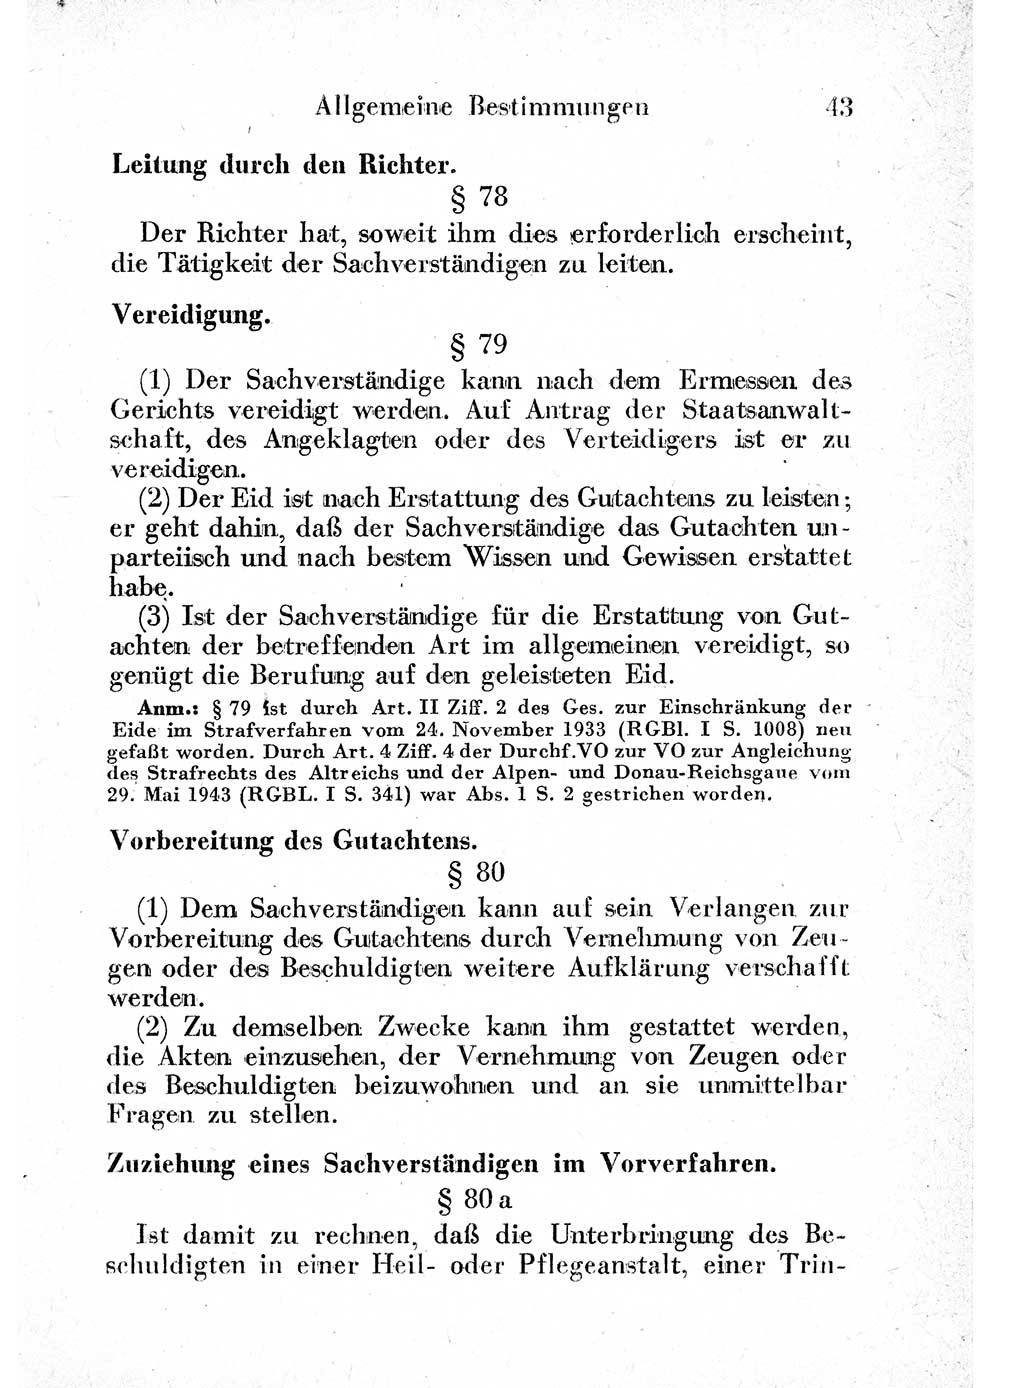 Strafprozeßordnung (StPO), Gerichtsverfassungsgesetz (GVG) und zahlreiche Nebengesetze der sowjetischen Besatzungszone (SBZ) in Deutschland 1949, Seite 43 (StPO GVG Ges. SBZ Dtl. 1949, S. 43)